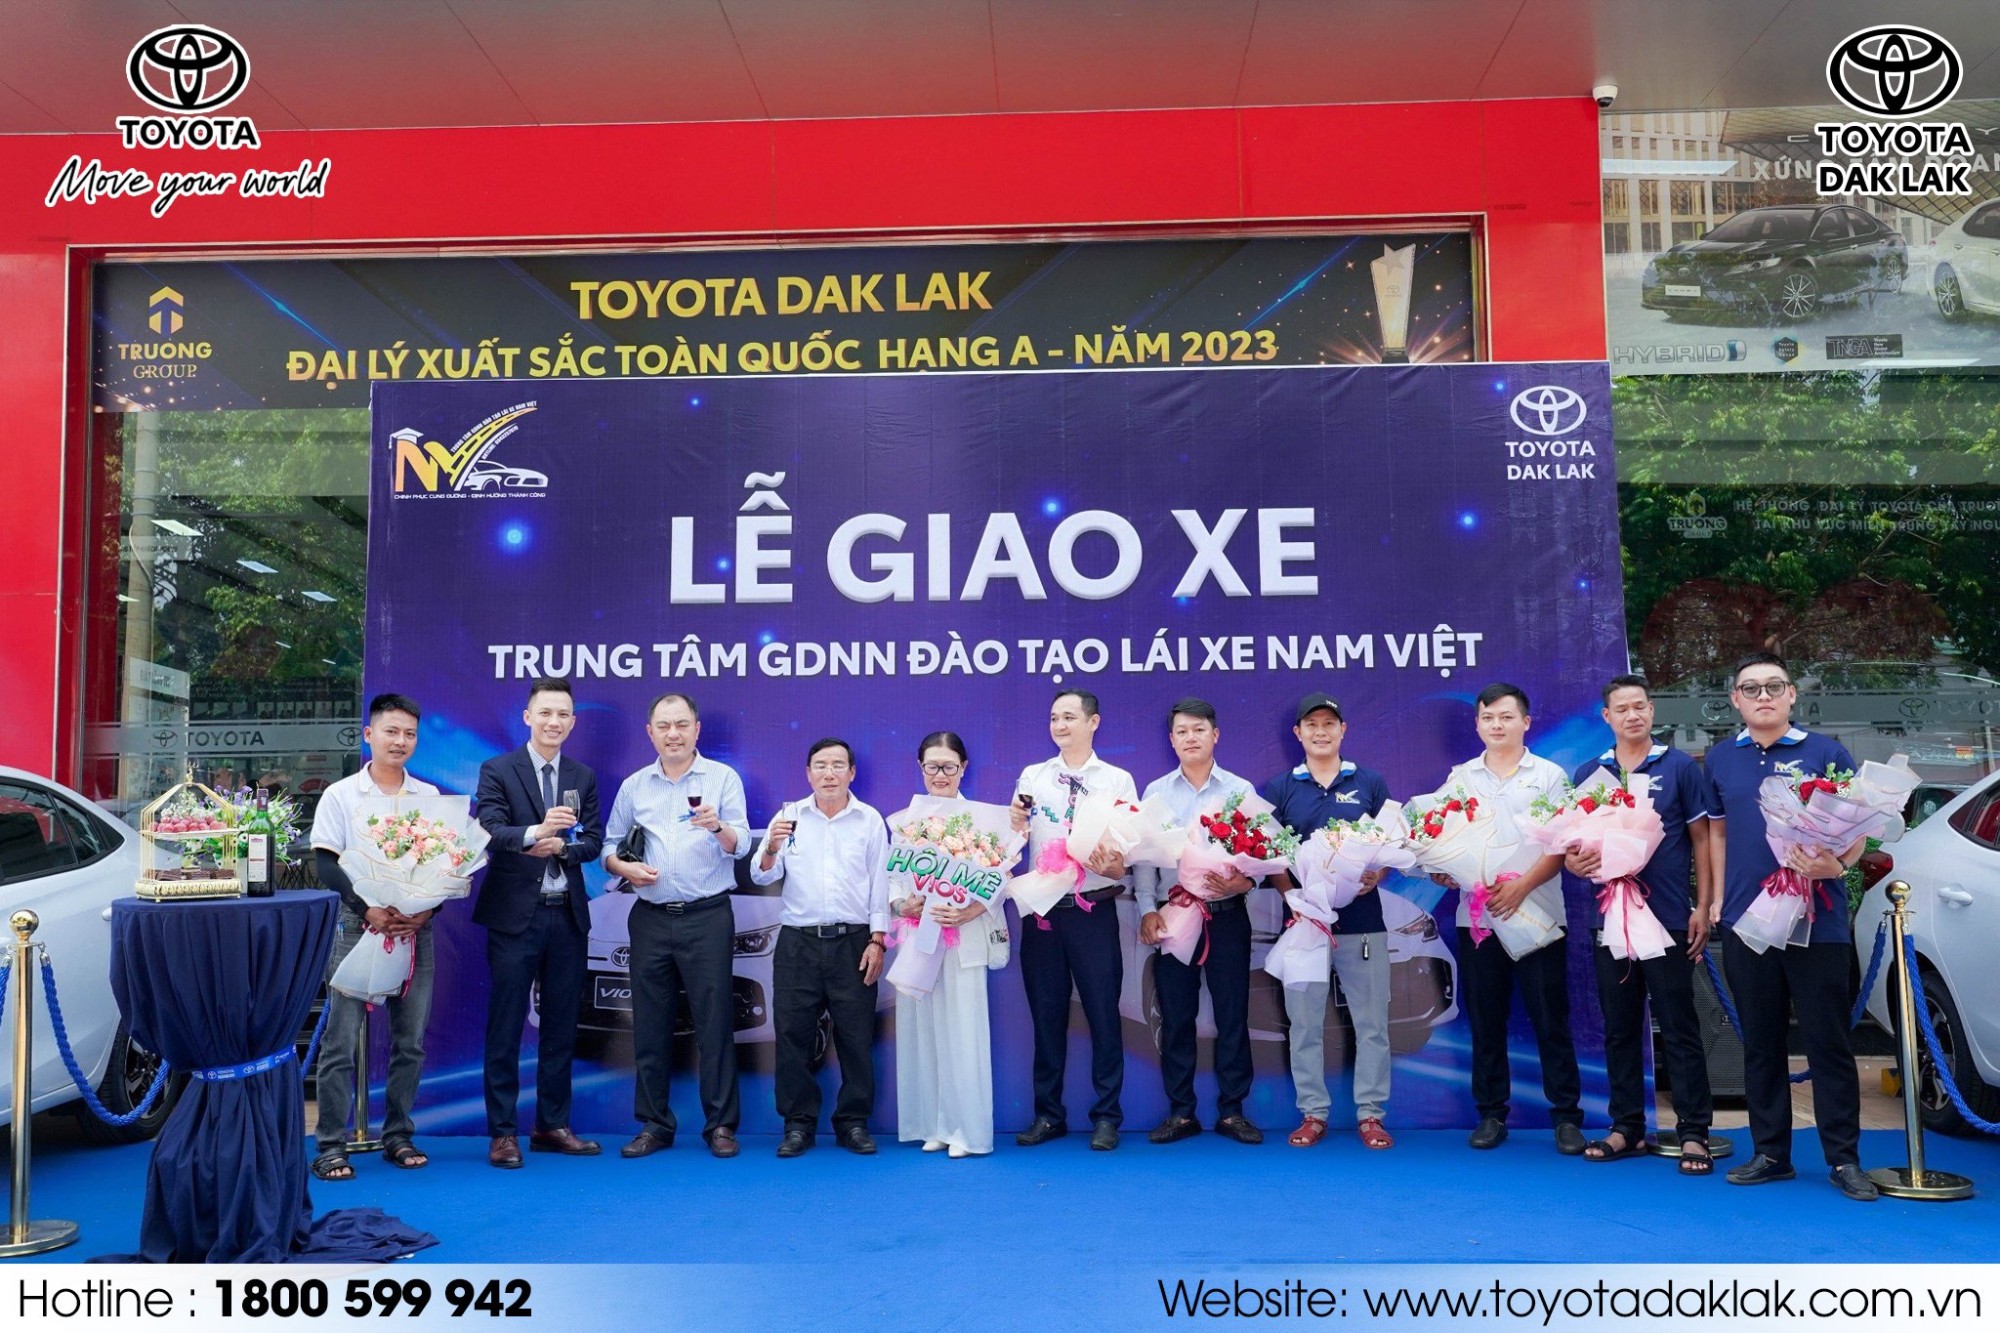 TOYOTA ĐẮK Lắk Bàn Giao Lô Xe Toyota Vios Mới Cho Trung Tâm GDNN Đào Tạo Lái Xe Nam Việt